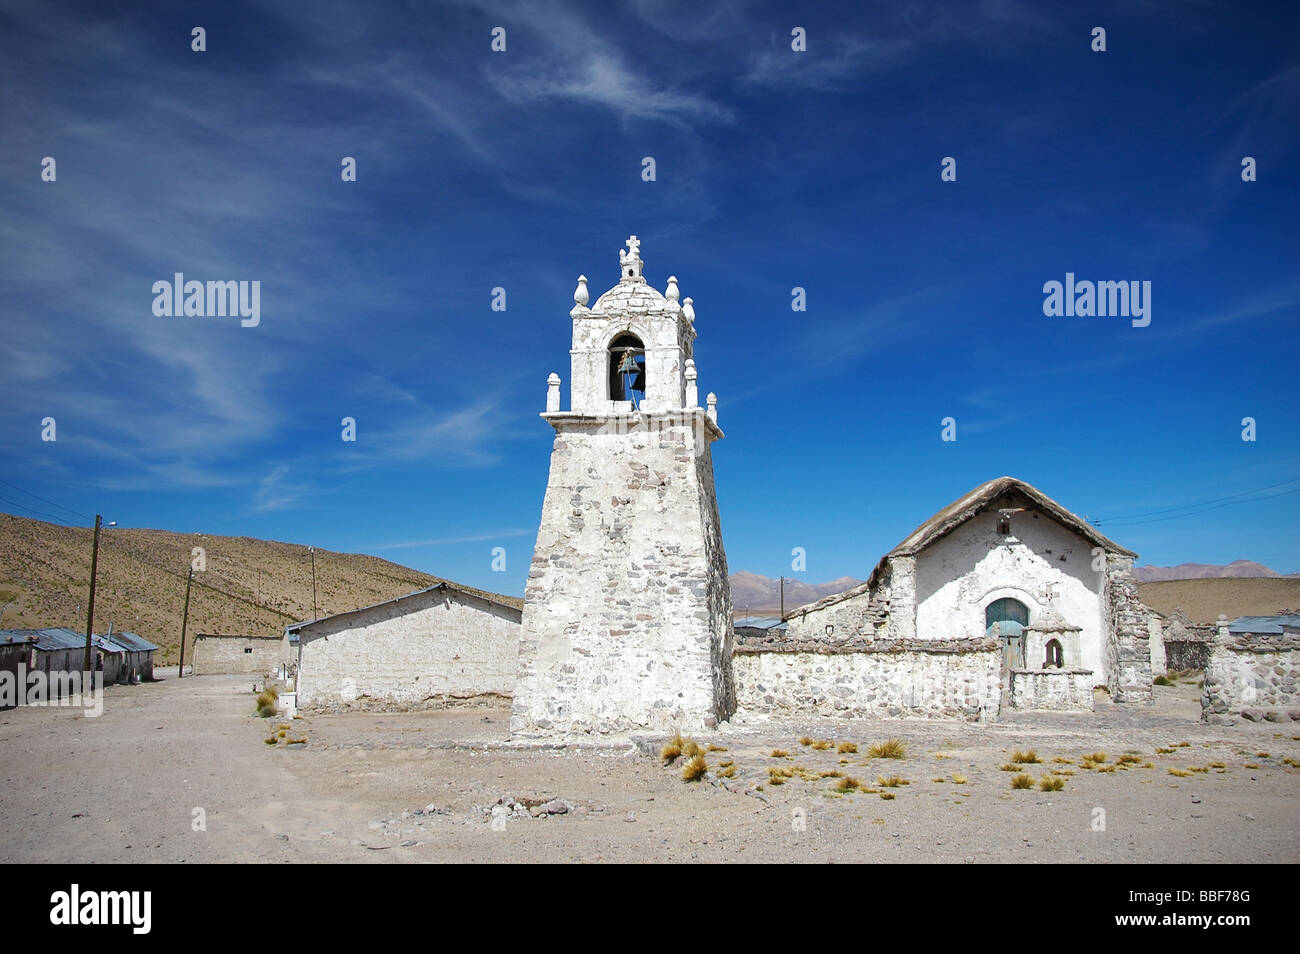 Adobe église dans le désert d'Atacama, Chili Banque D'Images